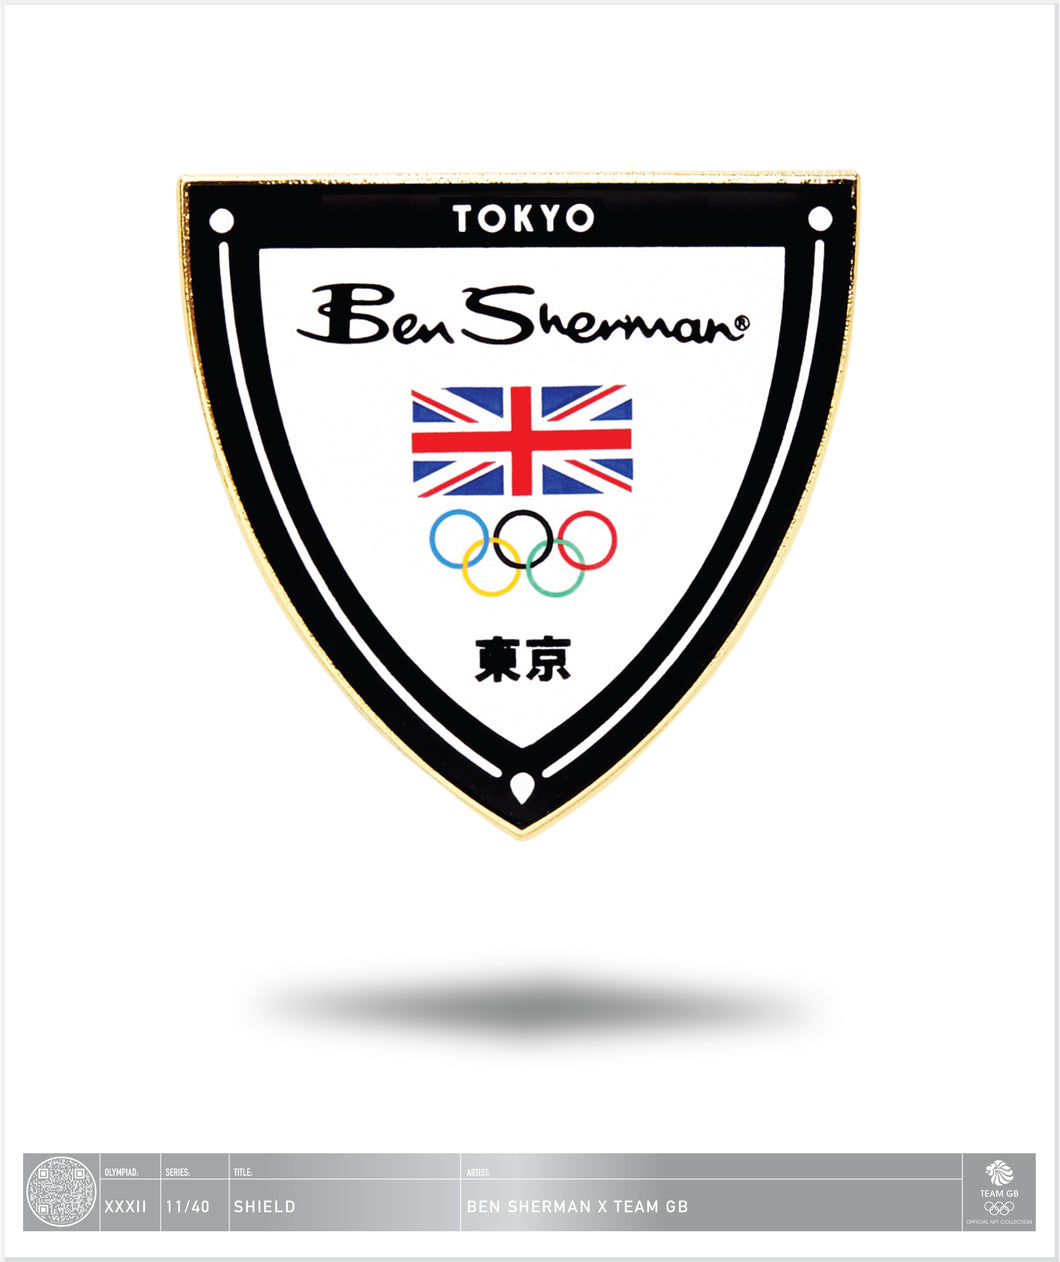 Ben Sherman Tokyo - Shield - 11 / 40